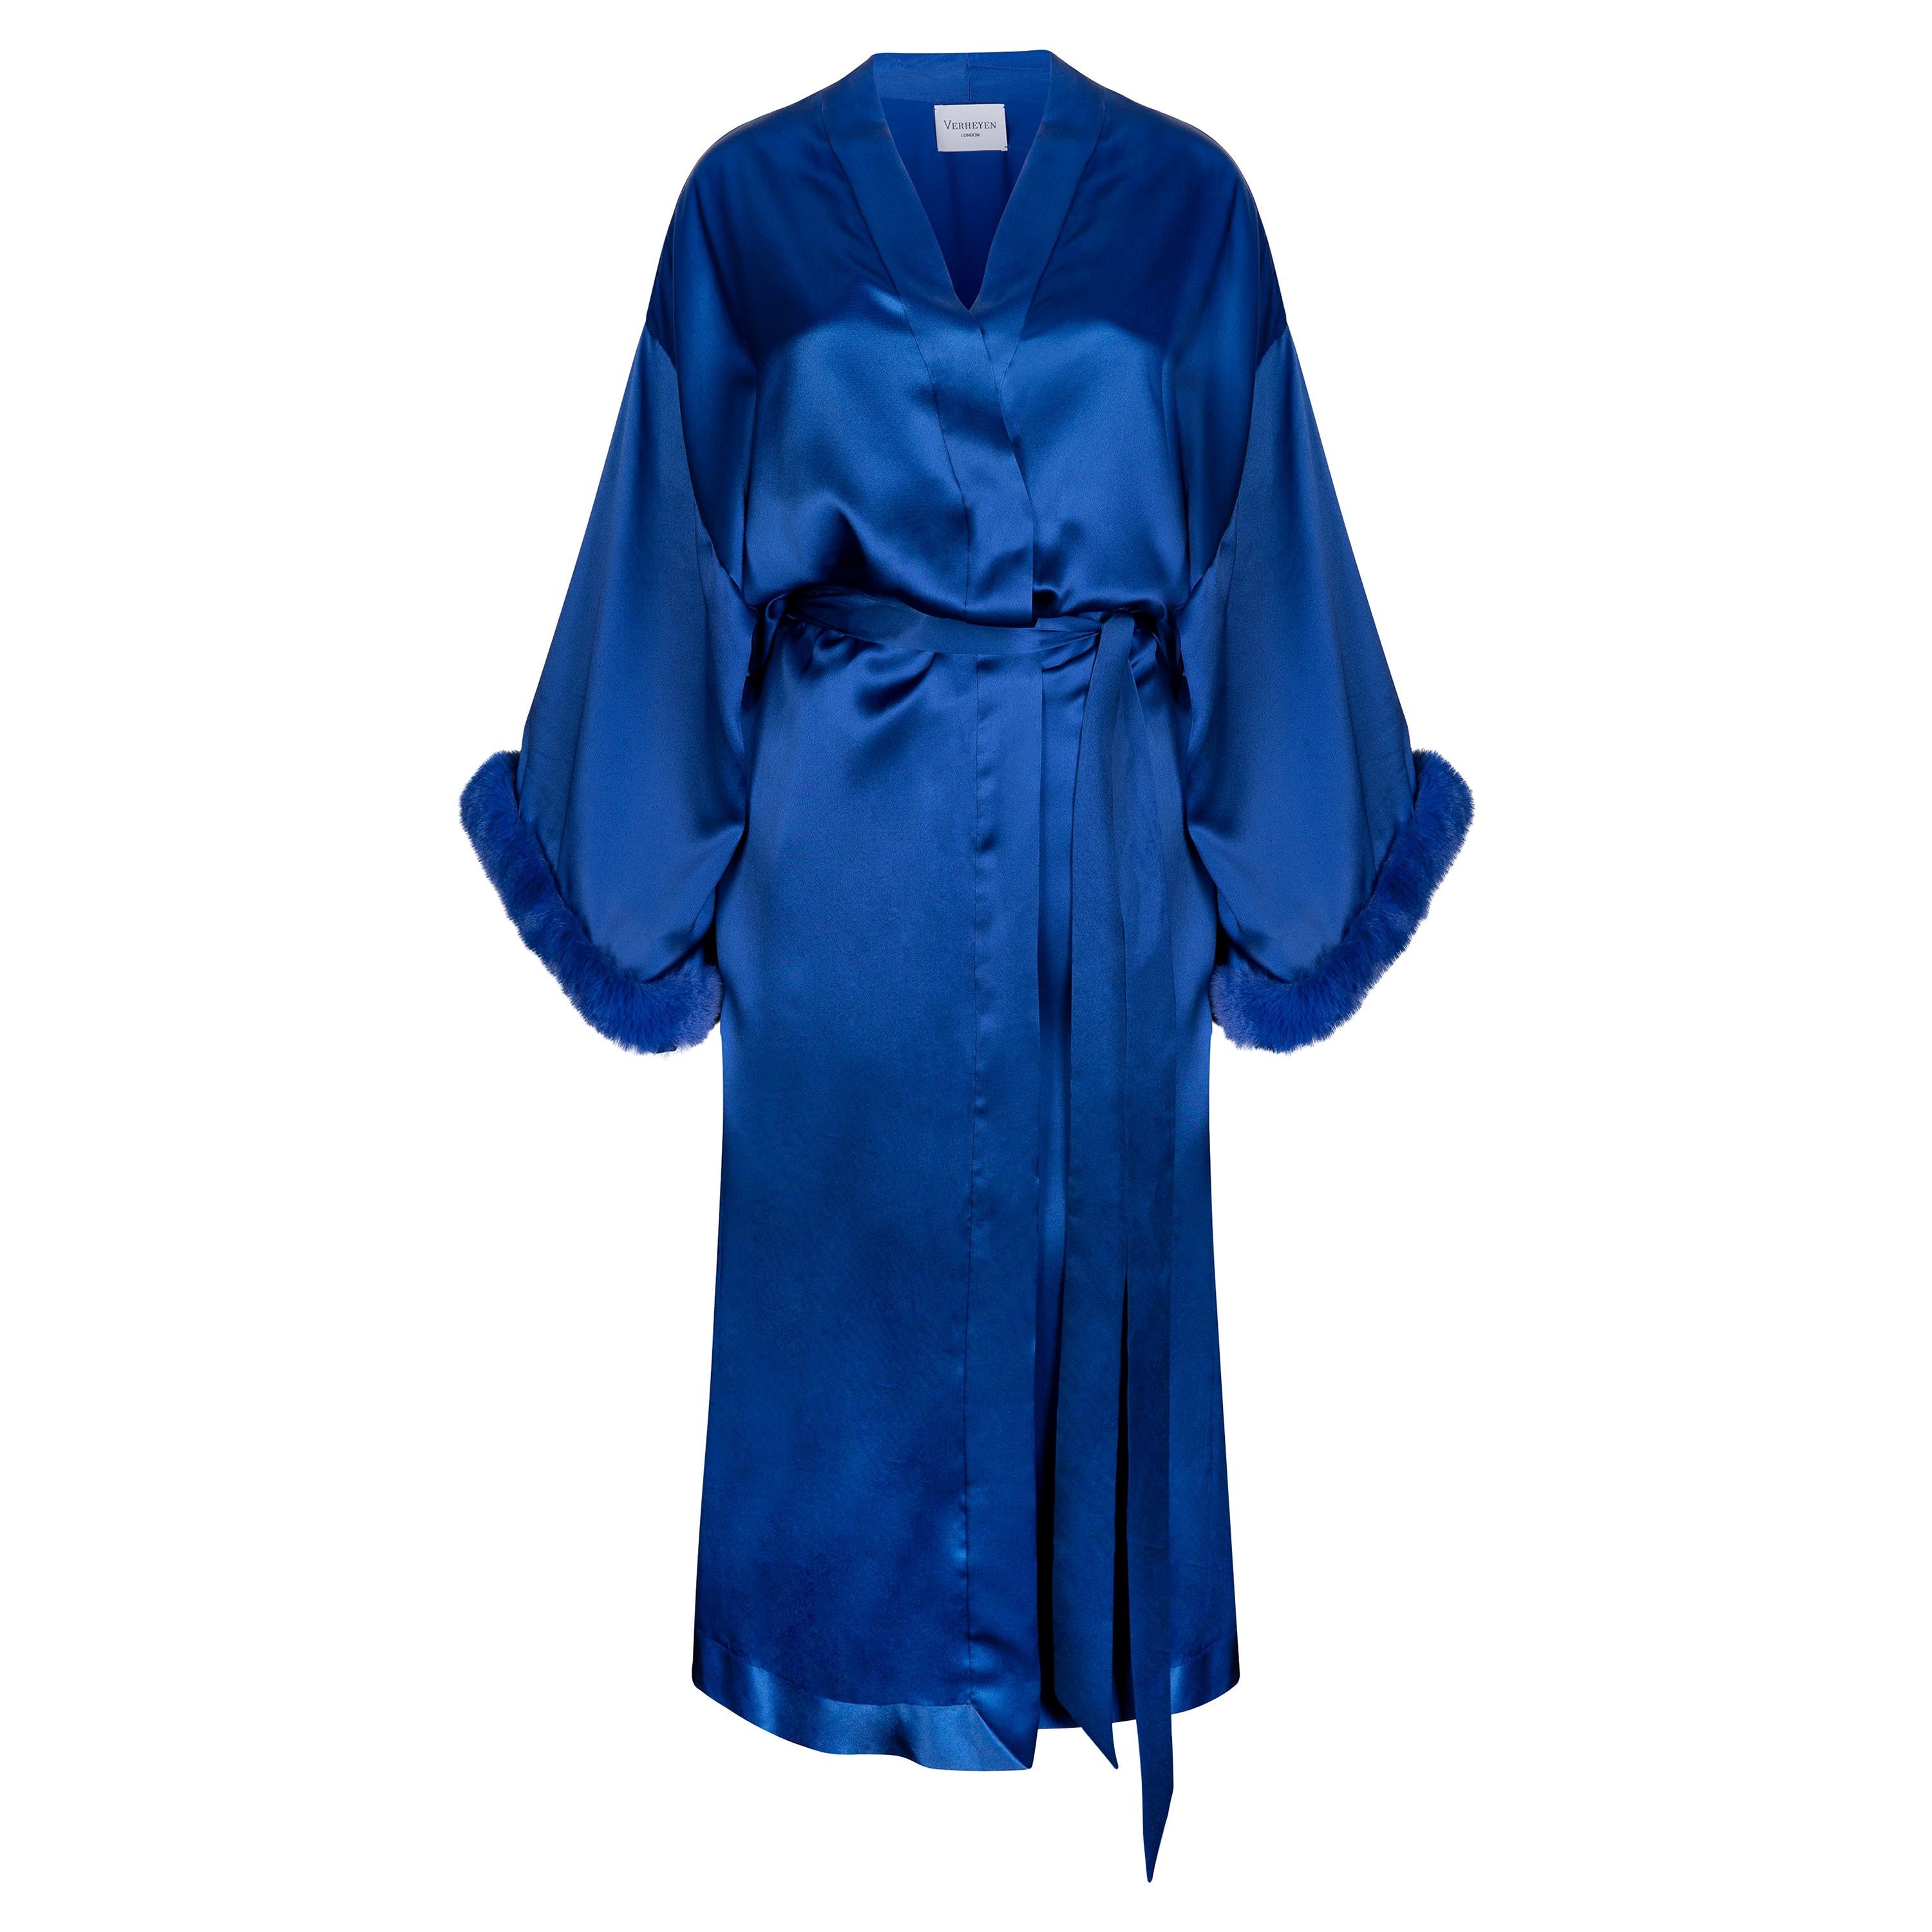 Verheyen London - Robe kimono bleue en satin de soie italien et fausse fourrure - Taille unique 